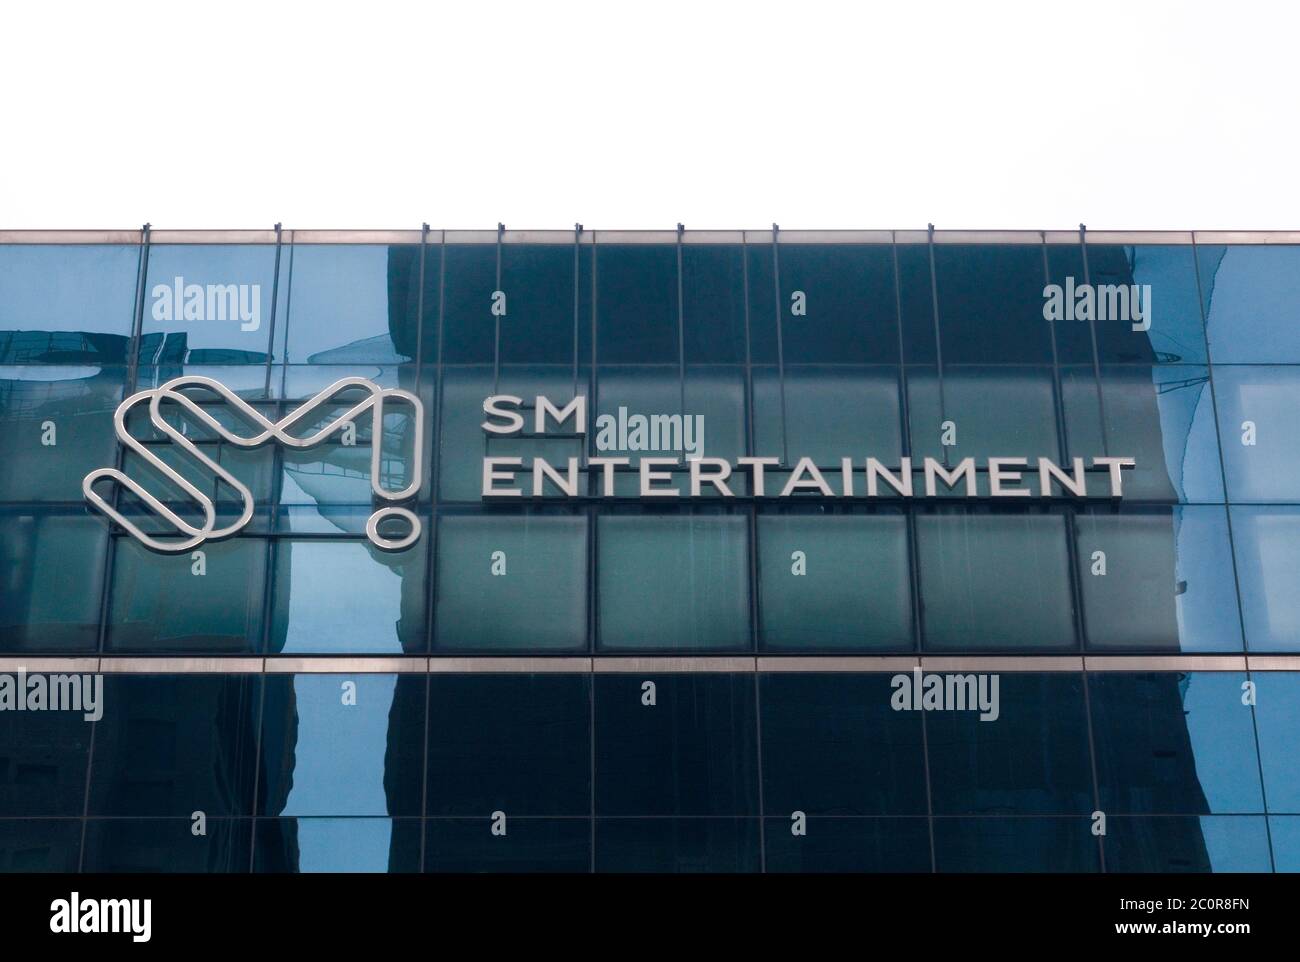 Sm entertainment stock